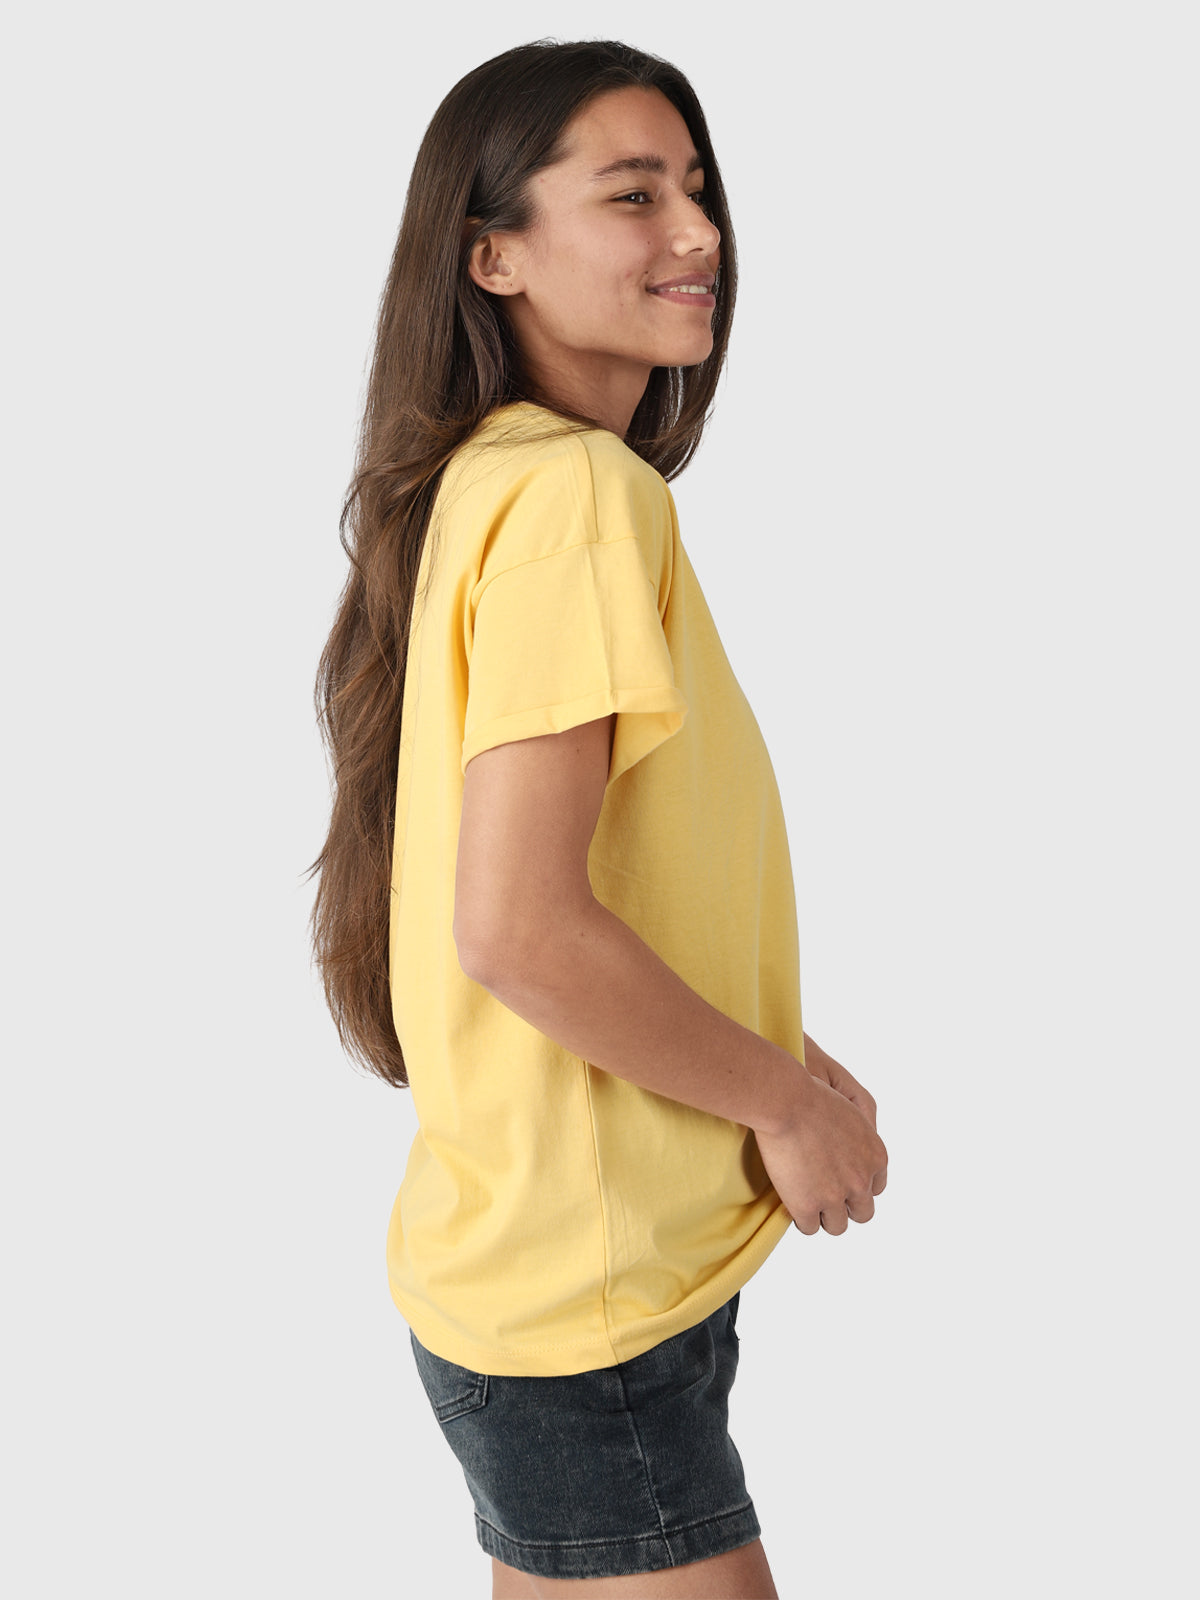 Samira-R Damen T-Shirt | Gelb